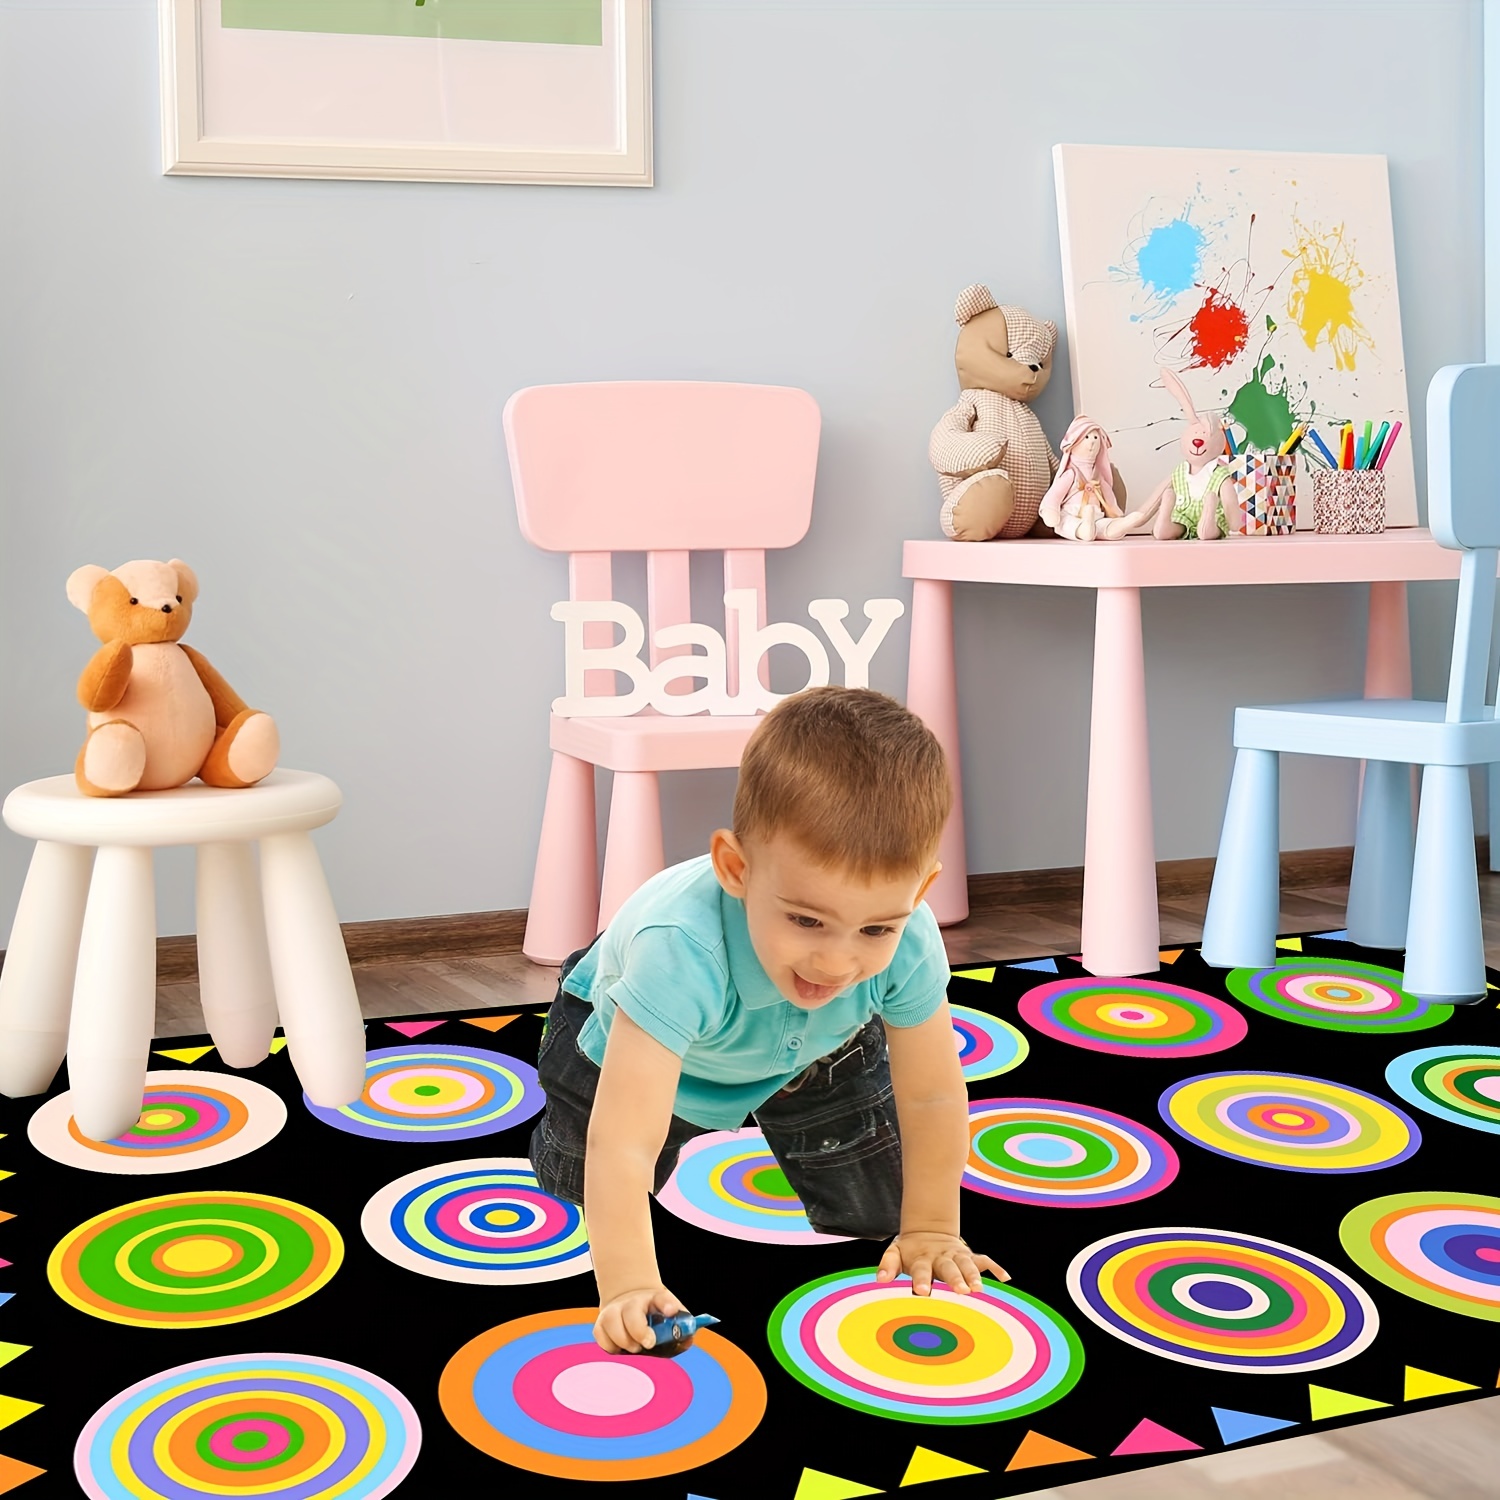 Alfombra de juegos para niños, alfombra de vida urbana, ideal para jugar  con autos, juguetes, alfombra para niños, alfombra de área para jugar y